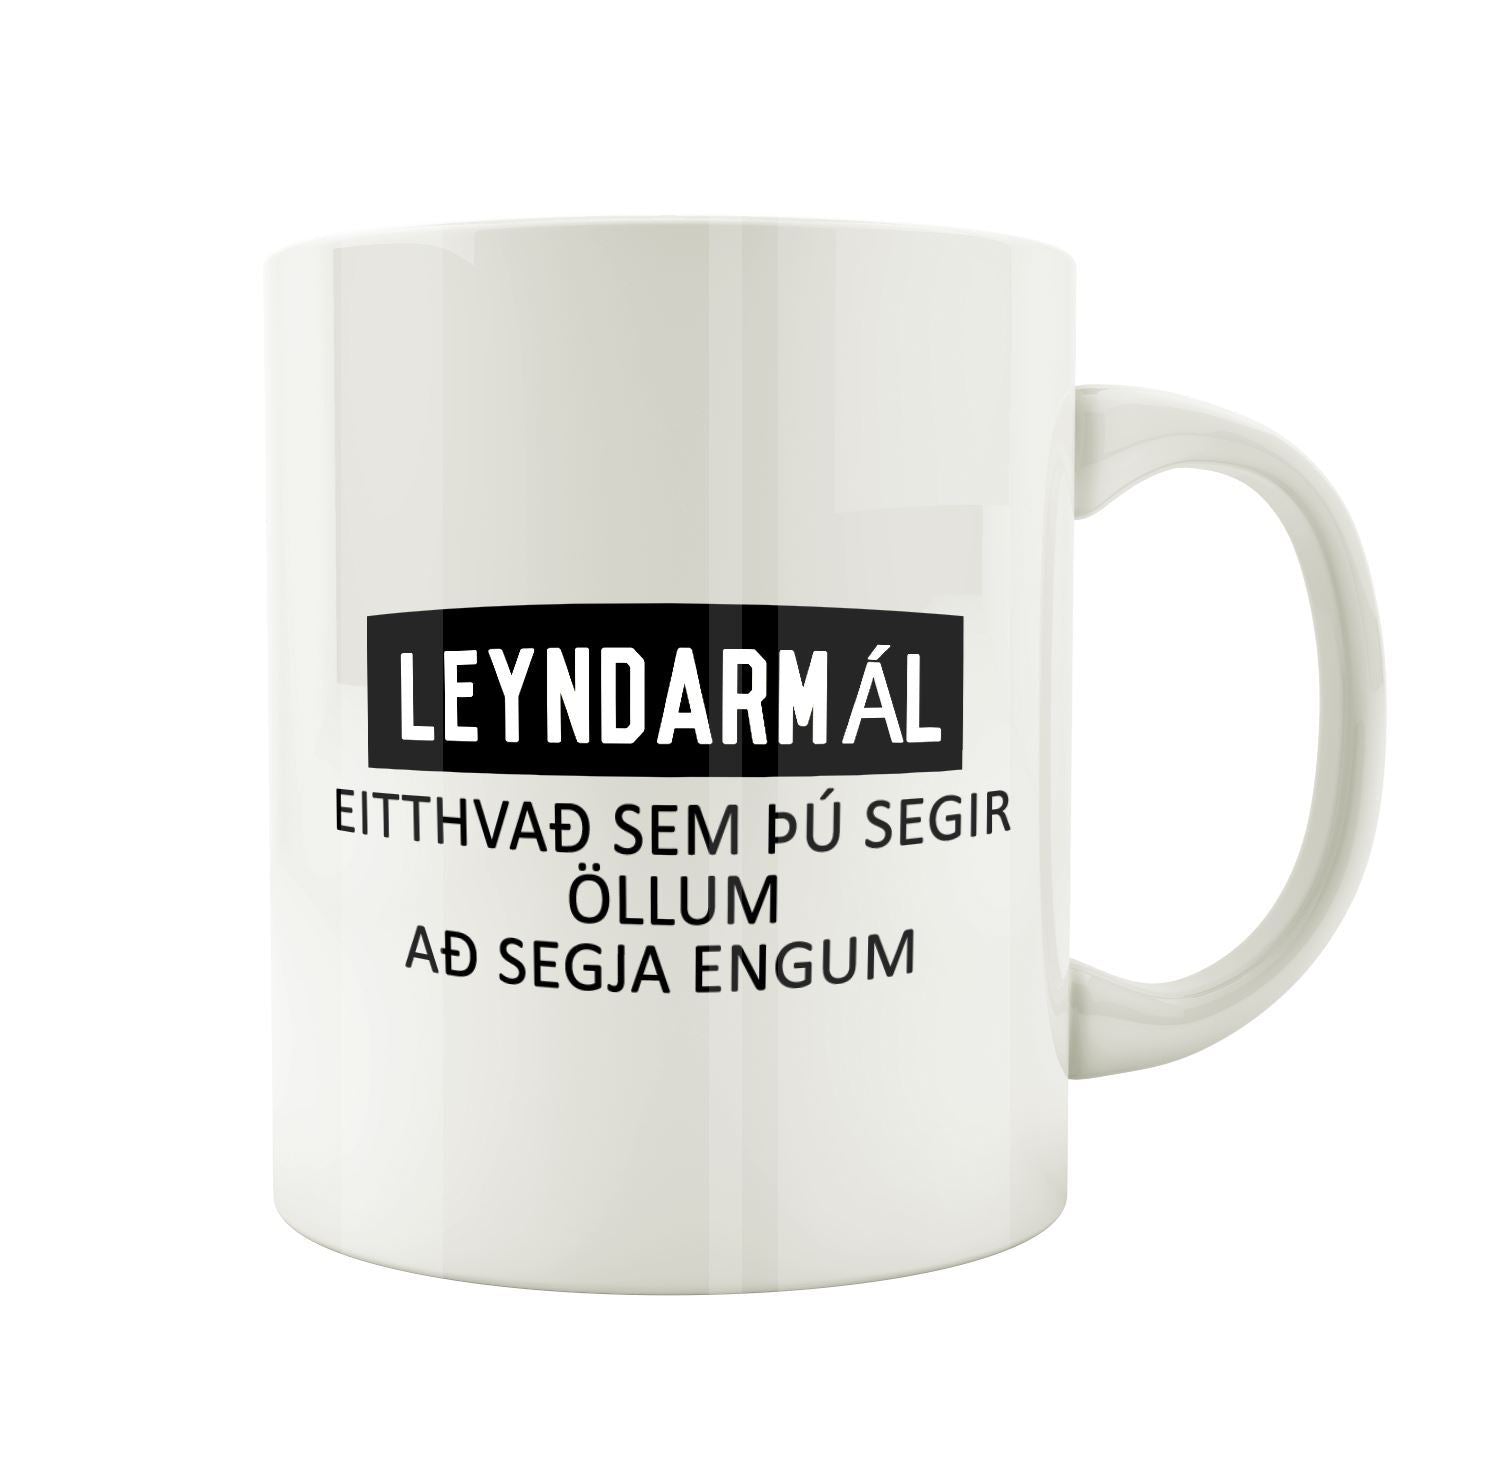 Leyndarmál, eitthvað sem þú segir öllum að segja engum